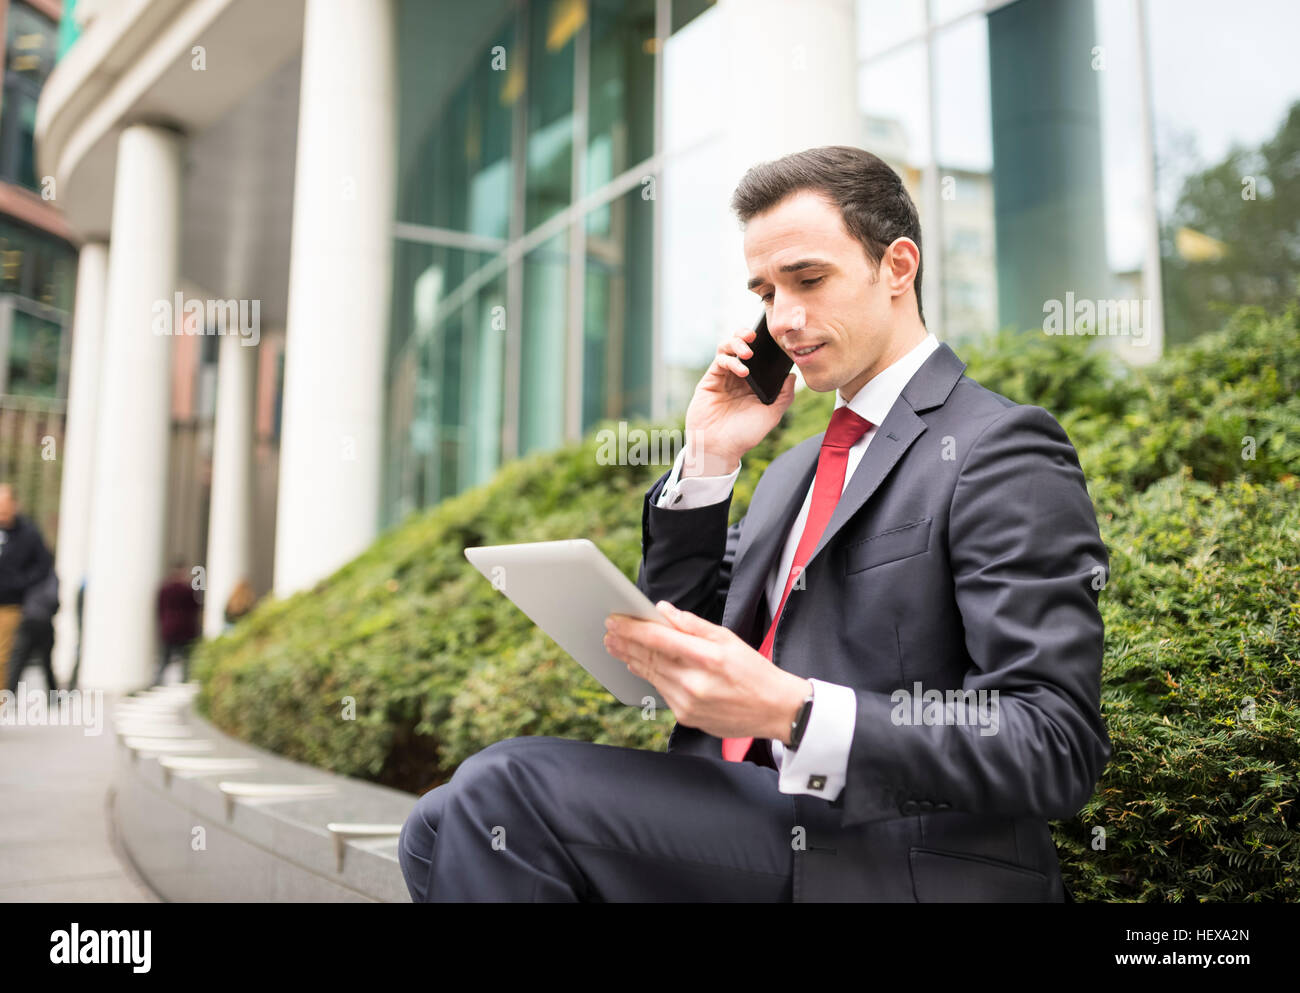 Hombre de negocios de la ciudad, las llamadas telefónicas mediante tableta digital Foto de stock